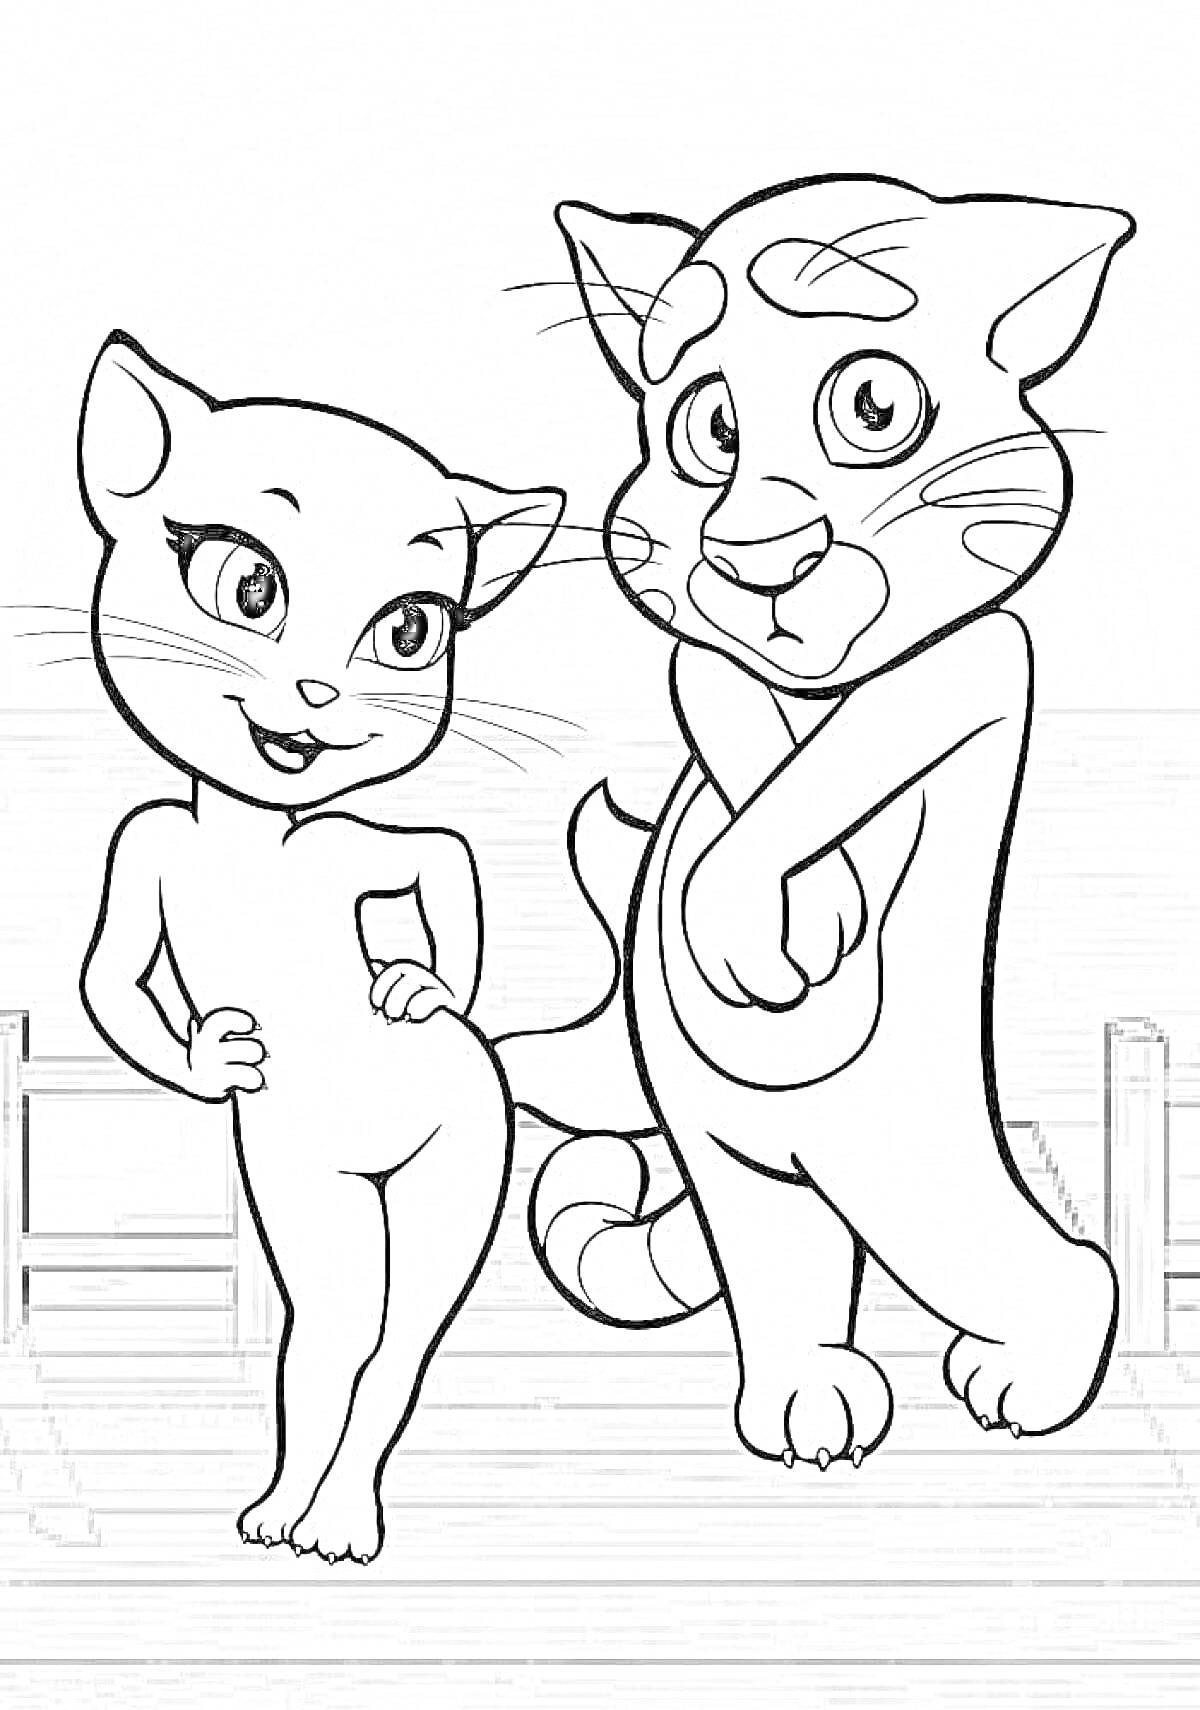 Раскраска Два кота на деревянном помосте